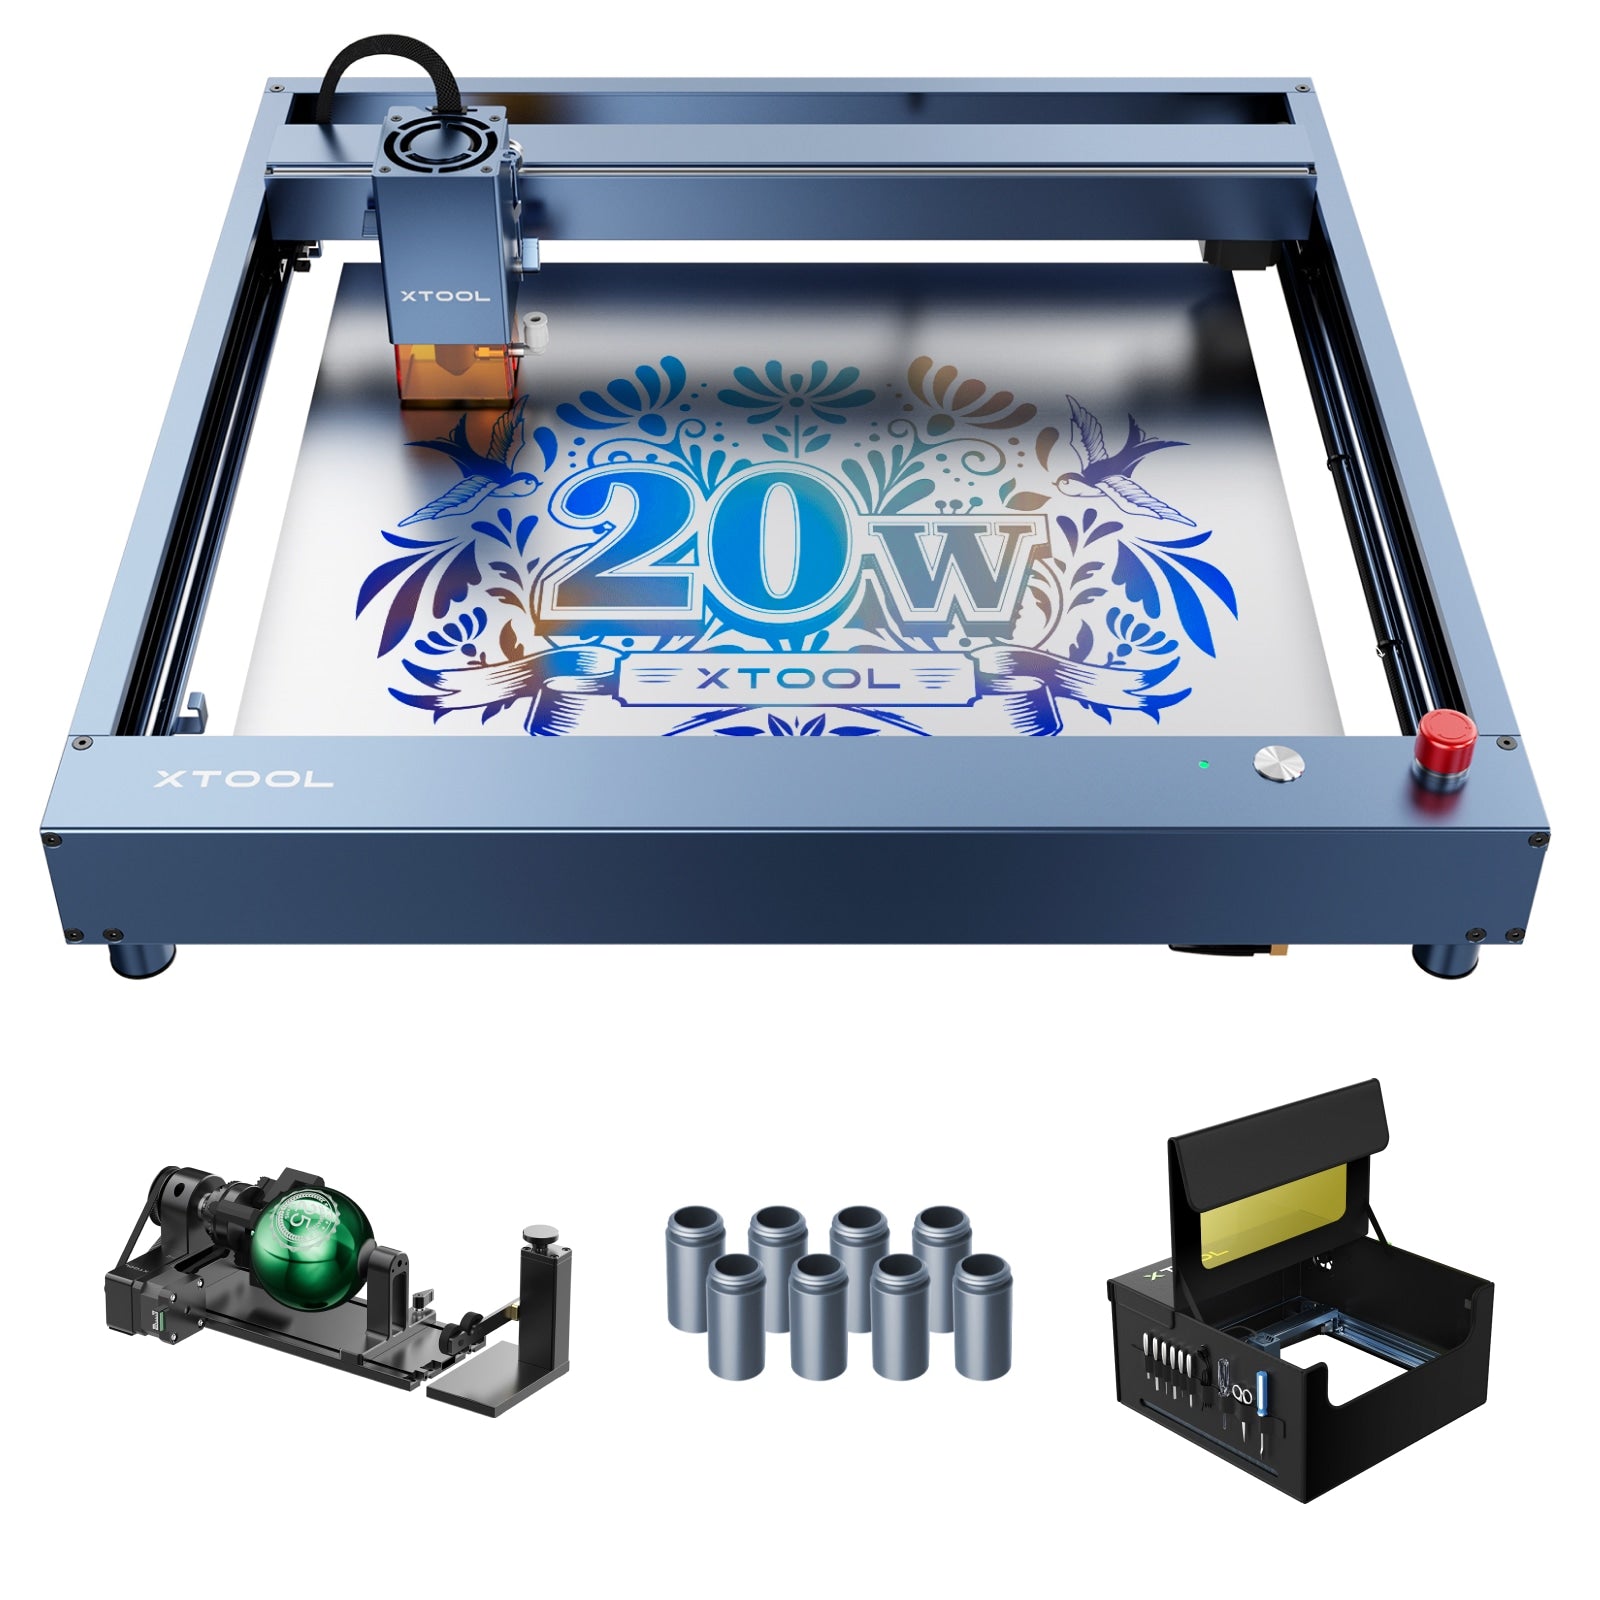 [Refurbished] xTool D1 Pro Laser Engraver Cutting Machine